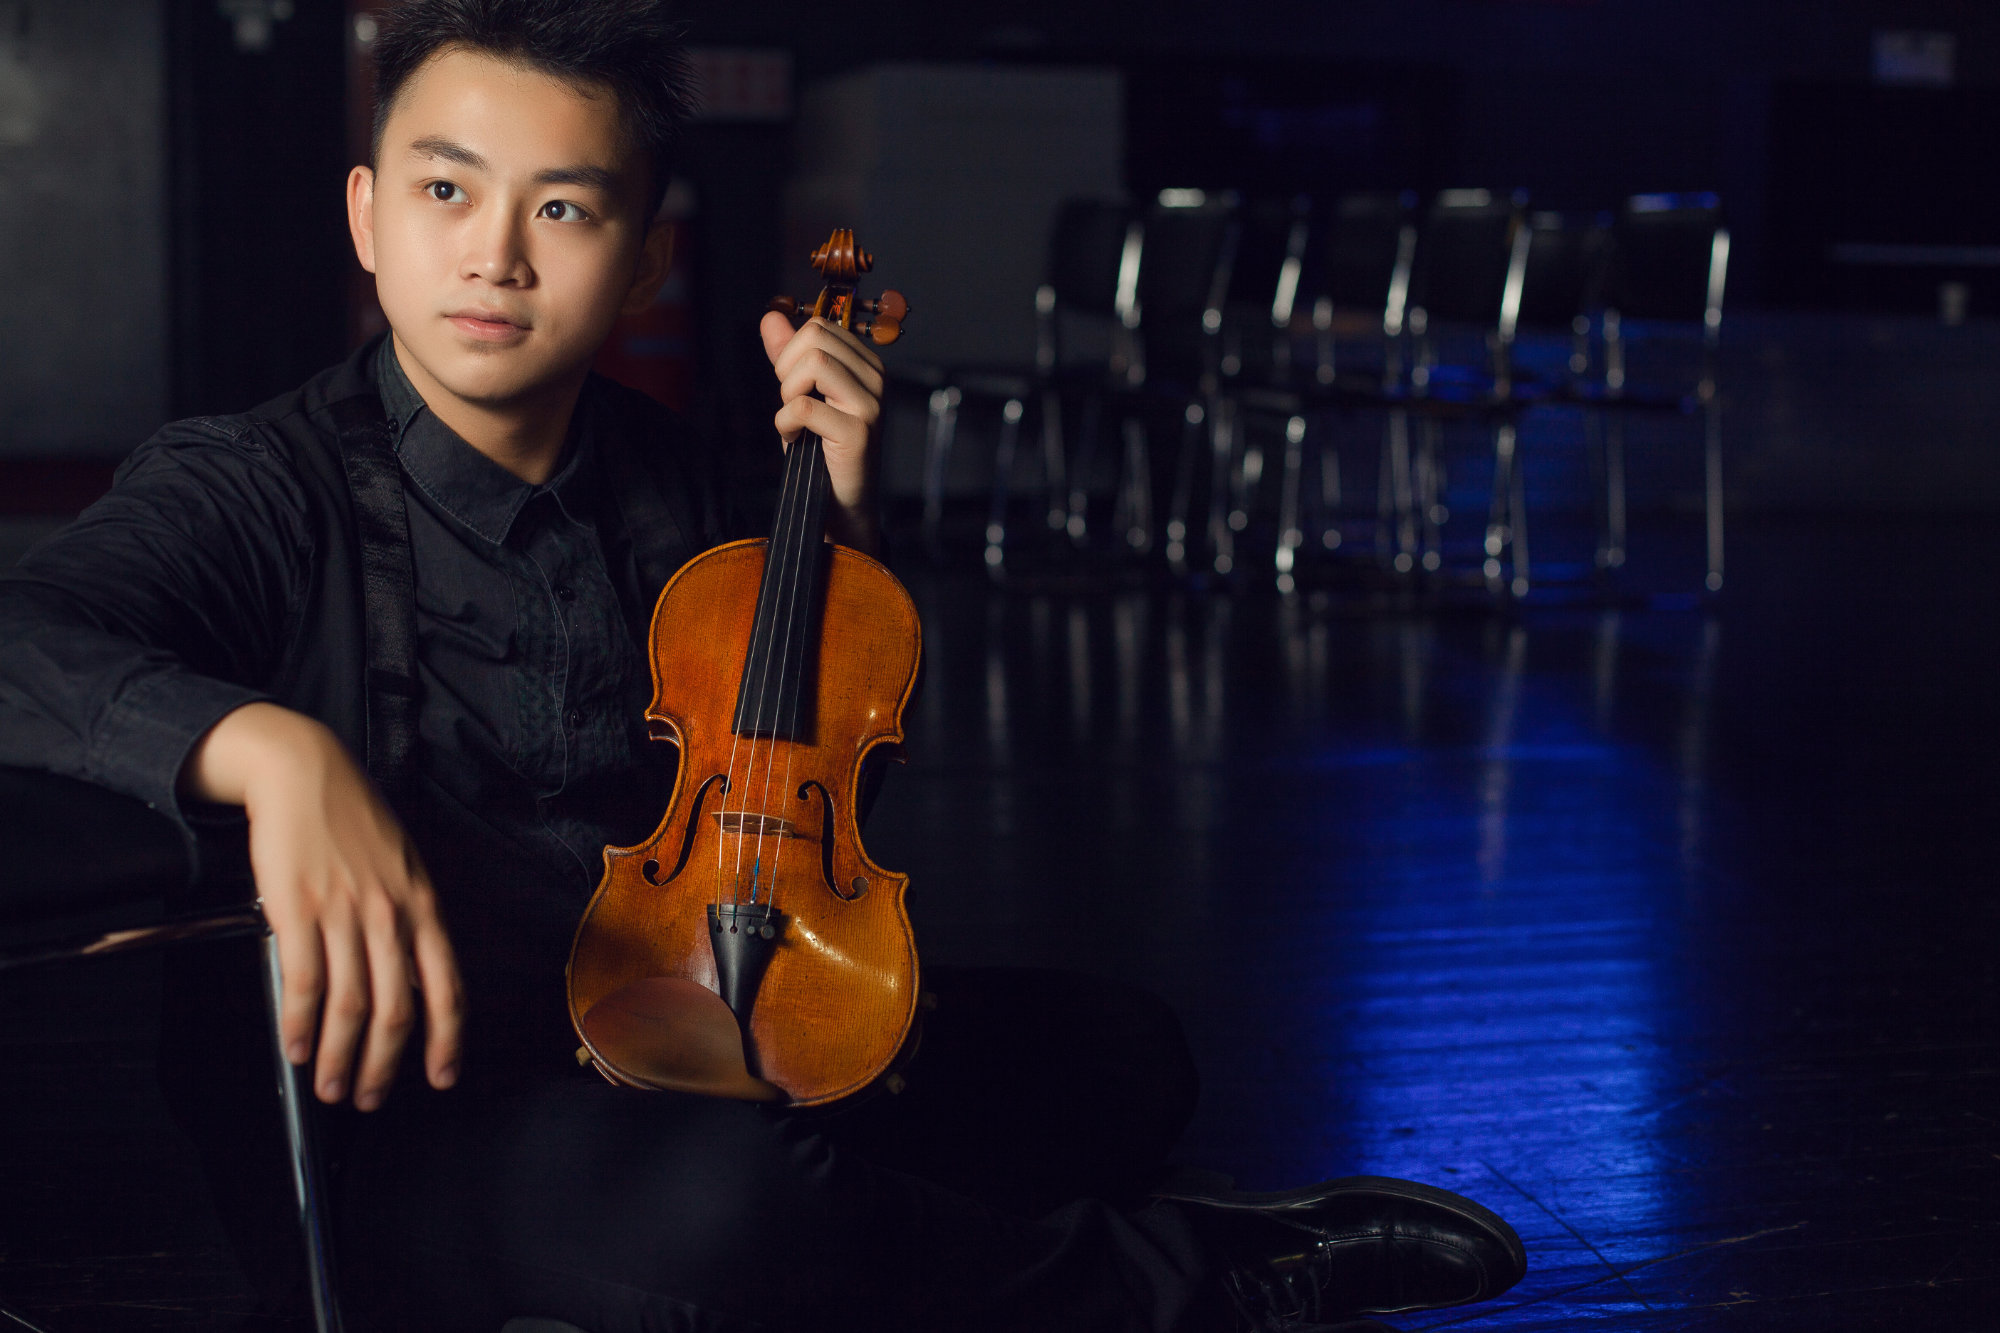 El violinista chino Ziyu He participará como solista en el concierto de la Sinfónica de Tenerife